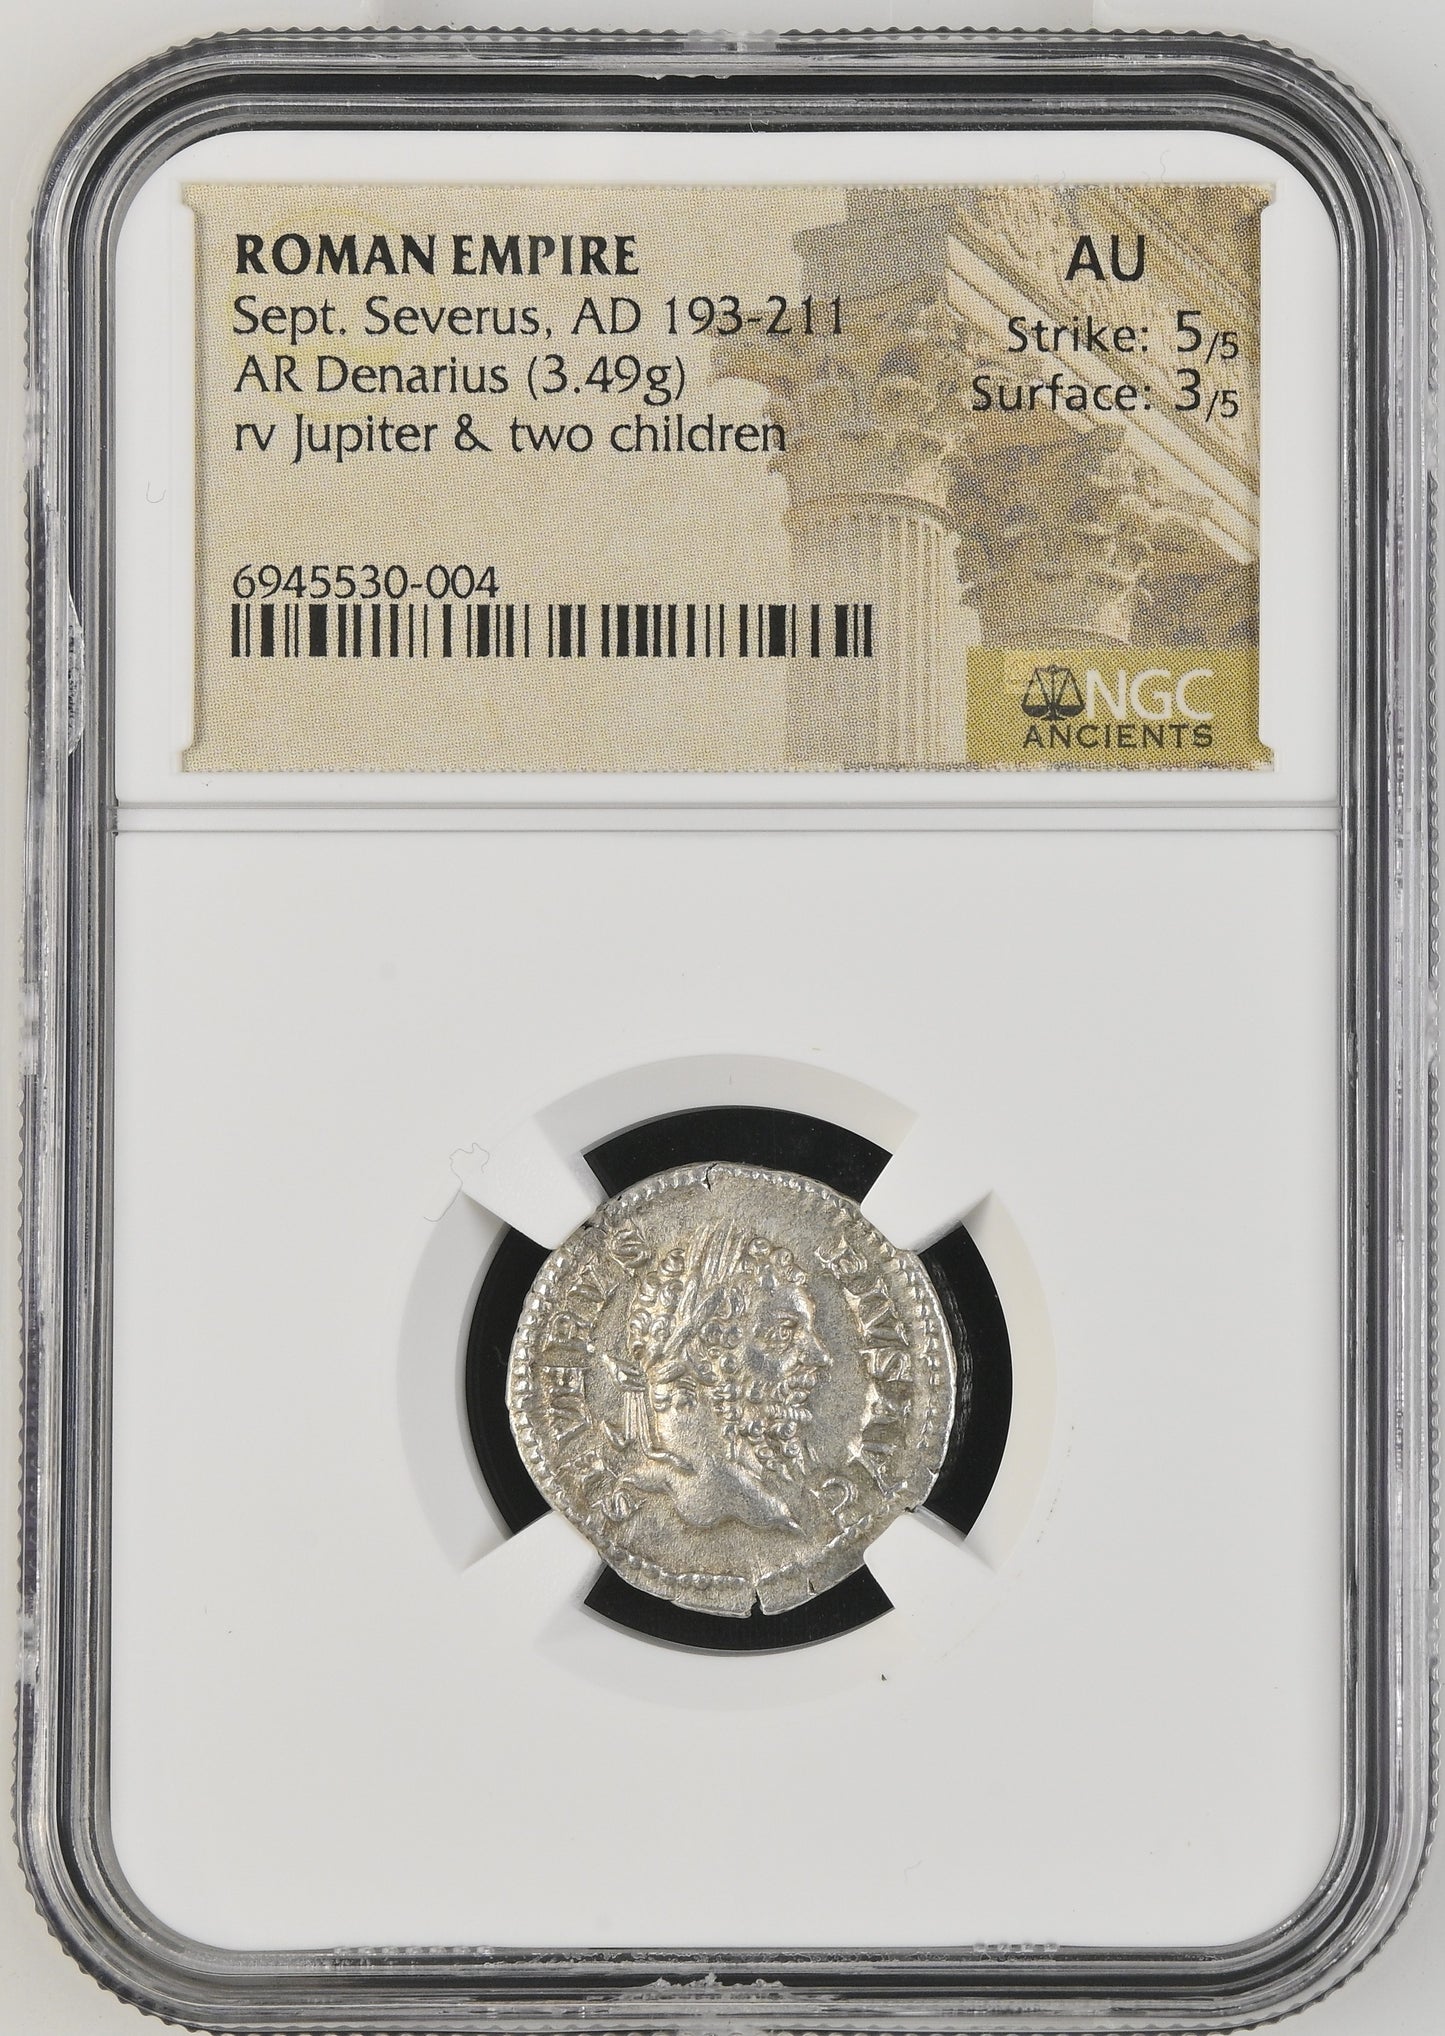 Roman Empire - Septimius Severus - Silver Denarius - NGC AU - RIC:226